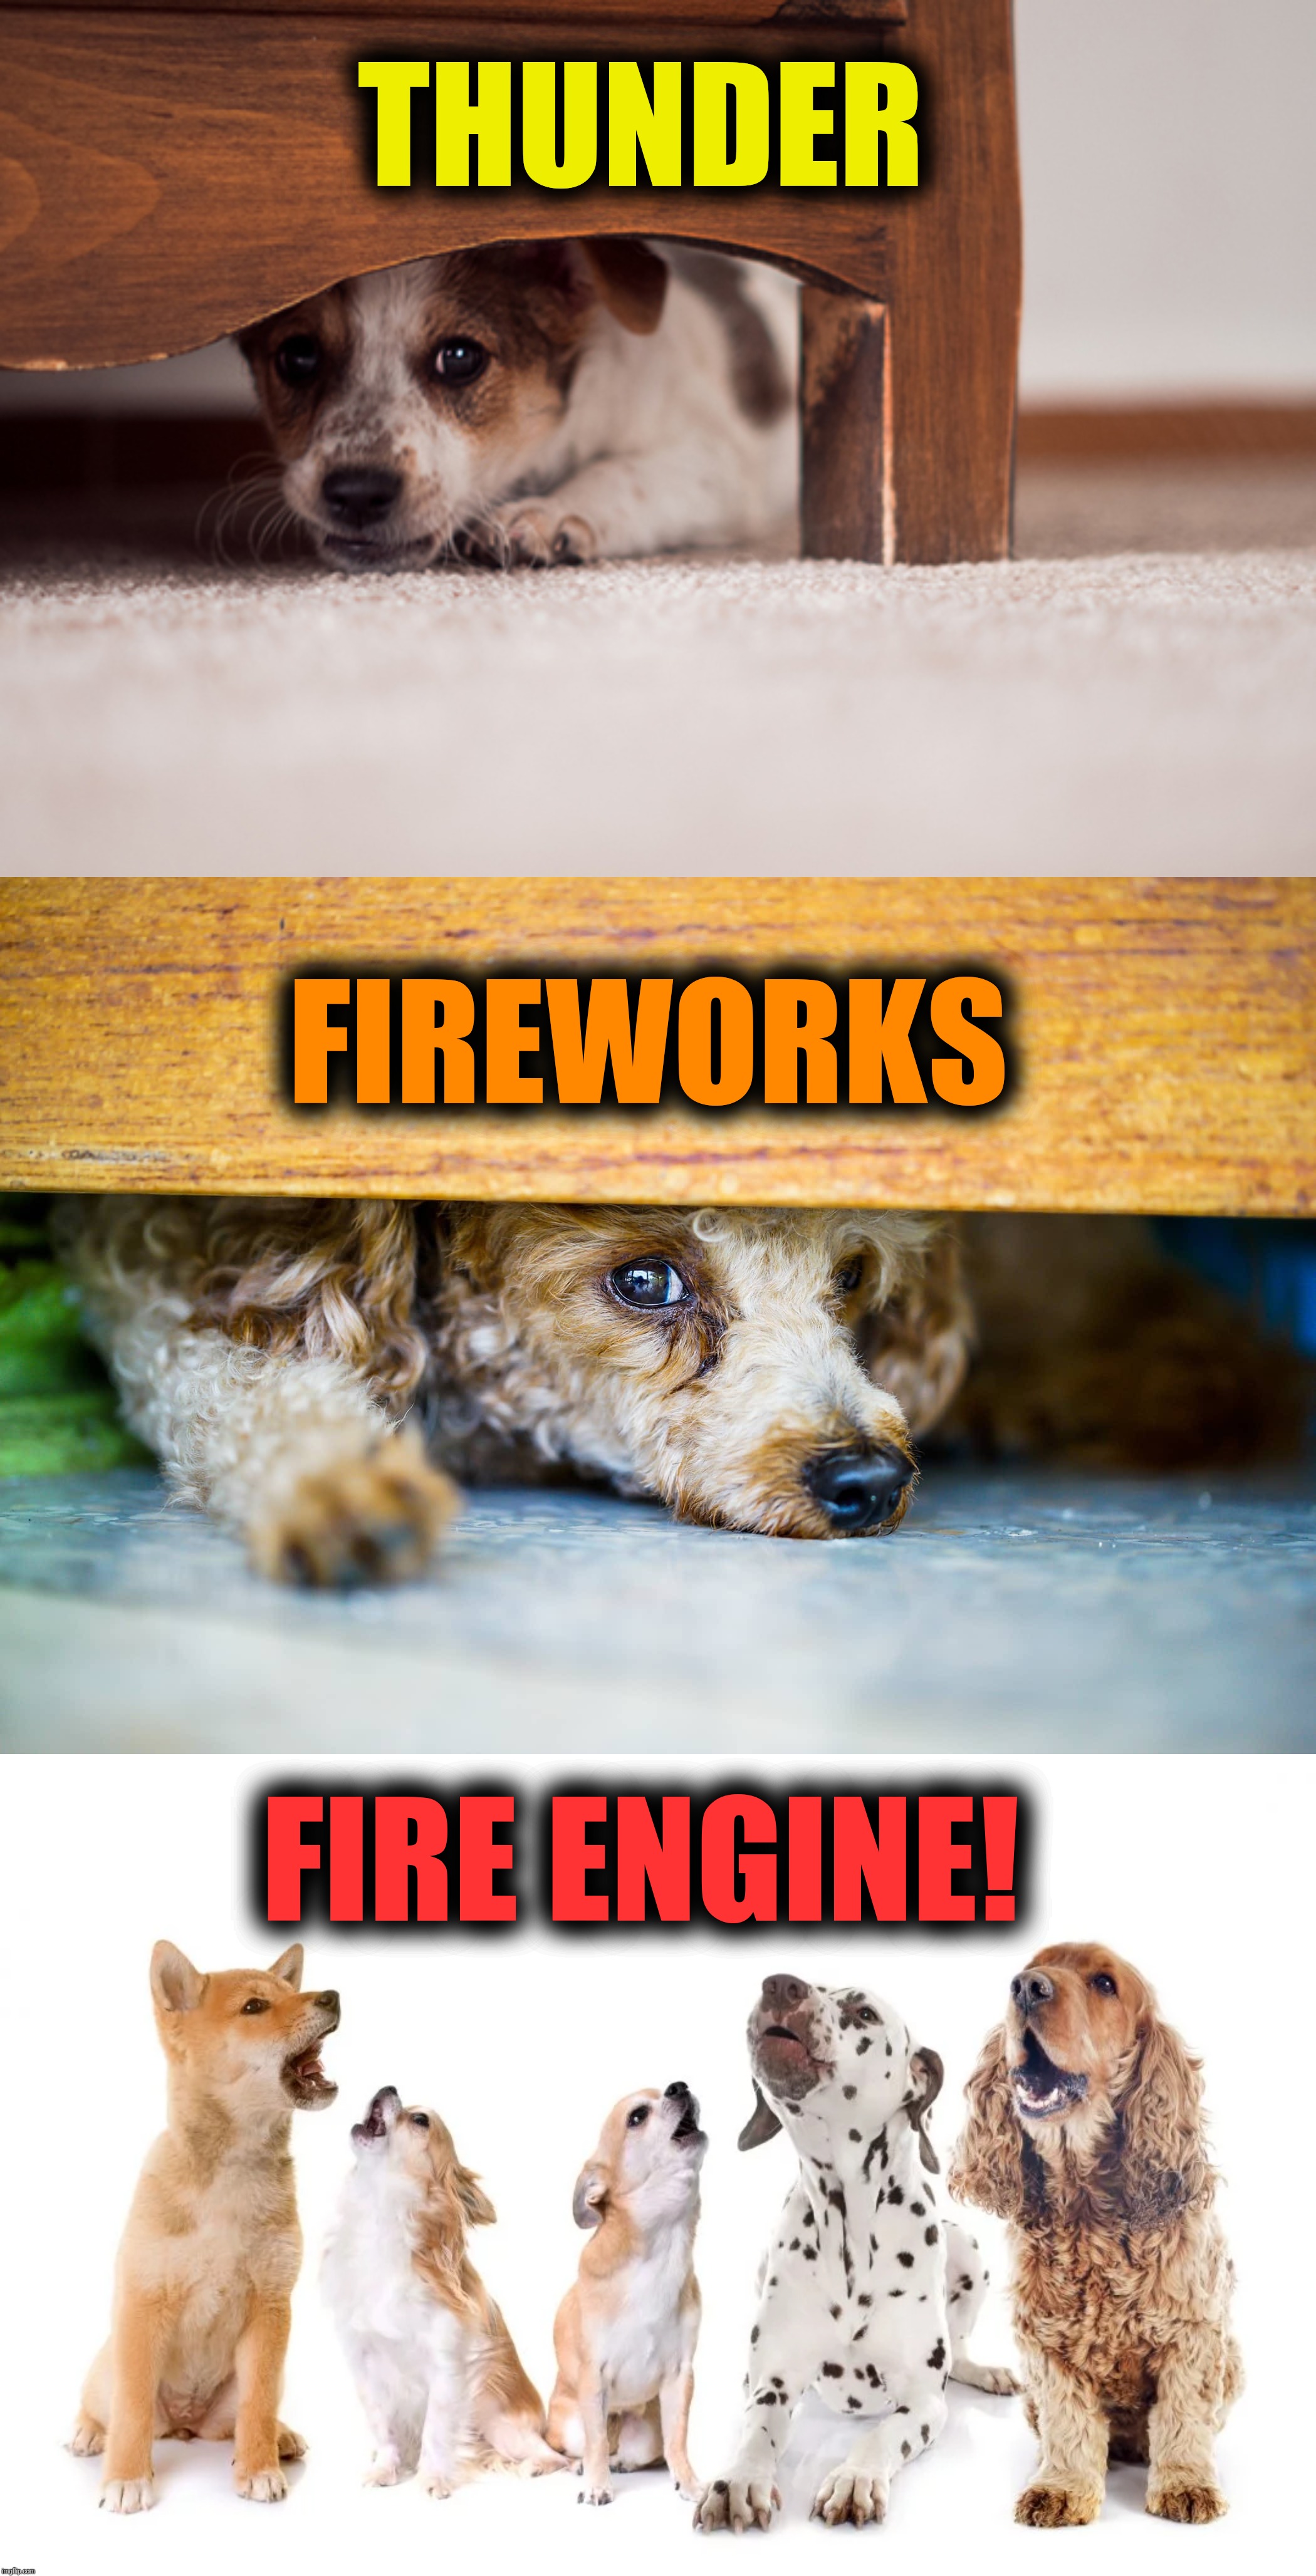 THUNDER FIRE ENGINE! FIREWORKS | made w/ Imgflip meme maker